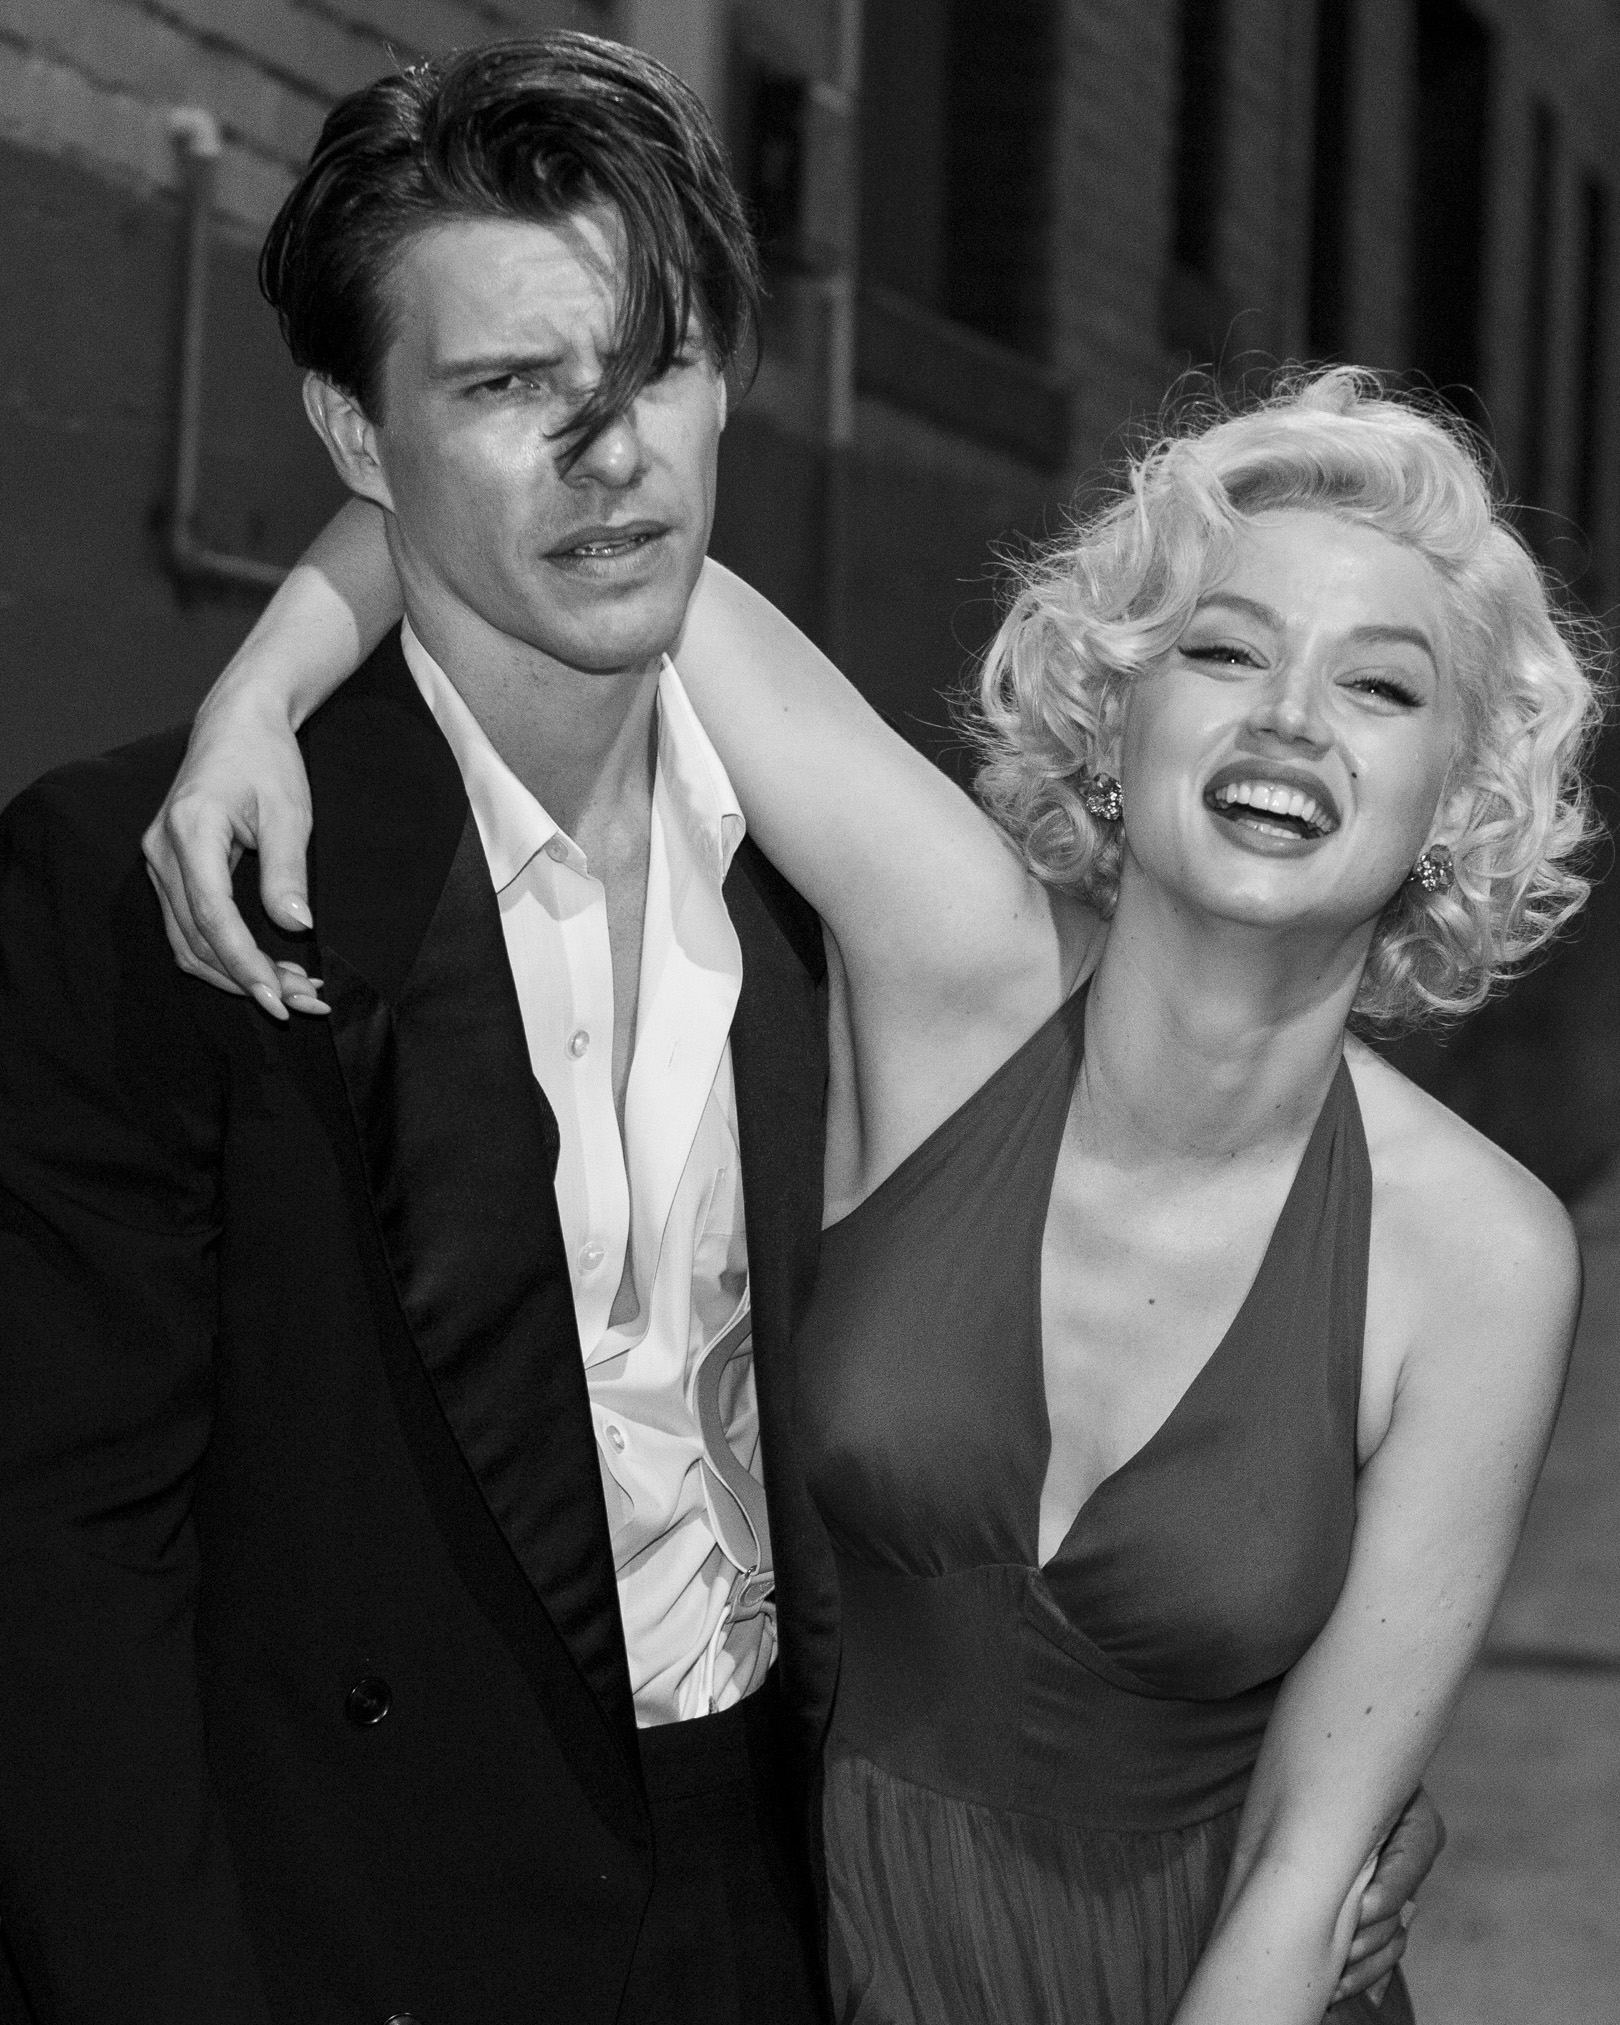 Ana de Armas channels Marilyn Monroe at 'Blonde' premiere in Venice